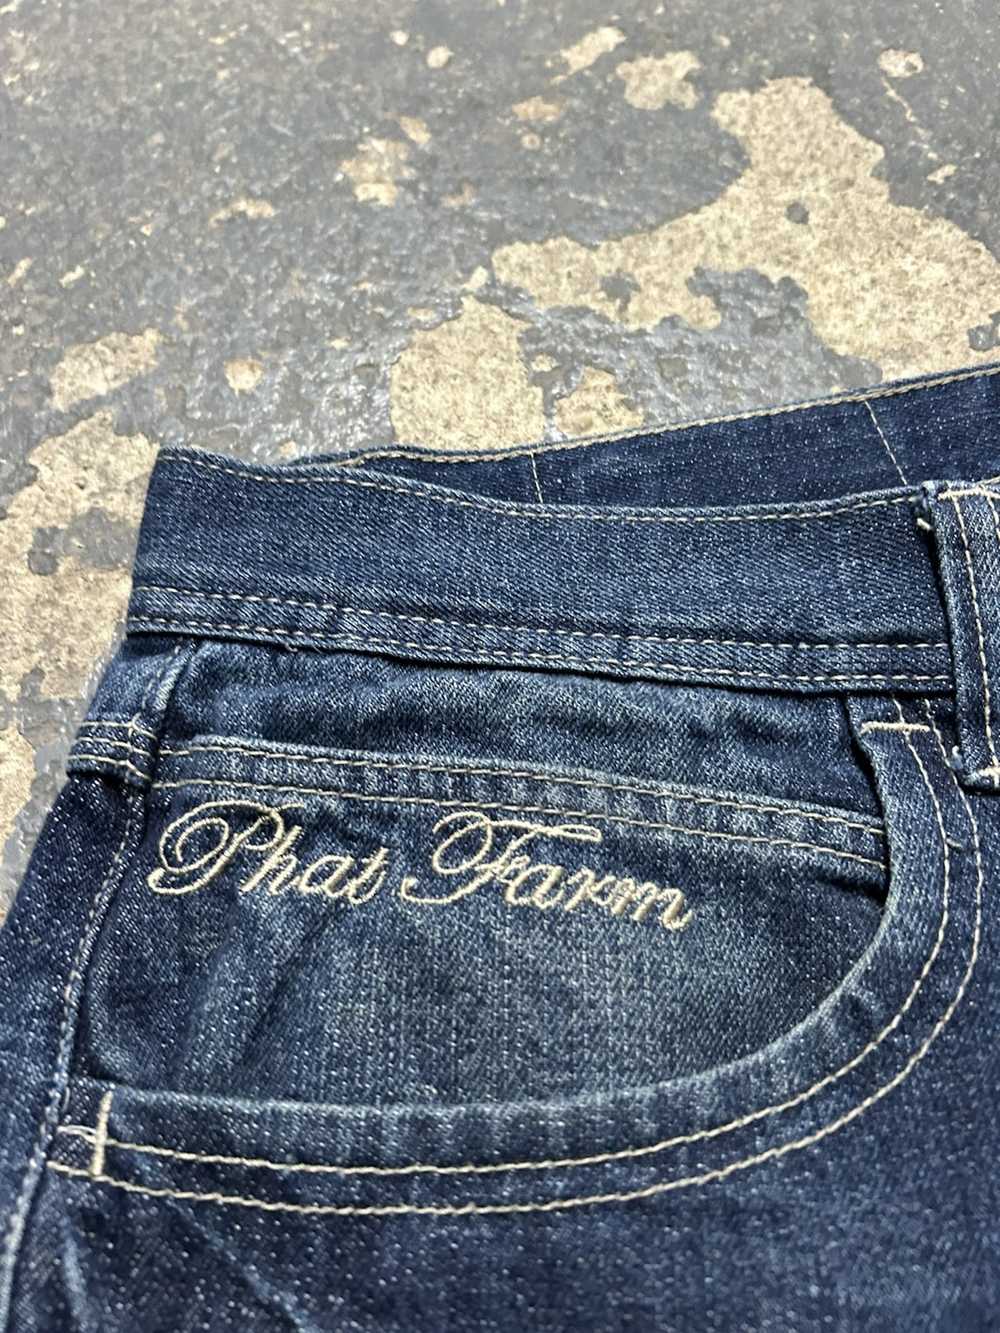 Phat Farm Phat farm denim jeans - image 4